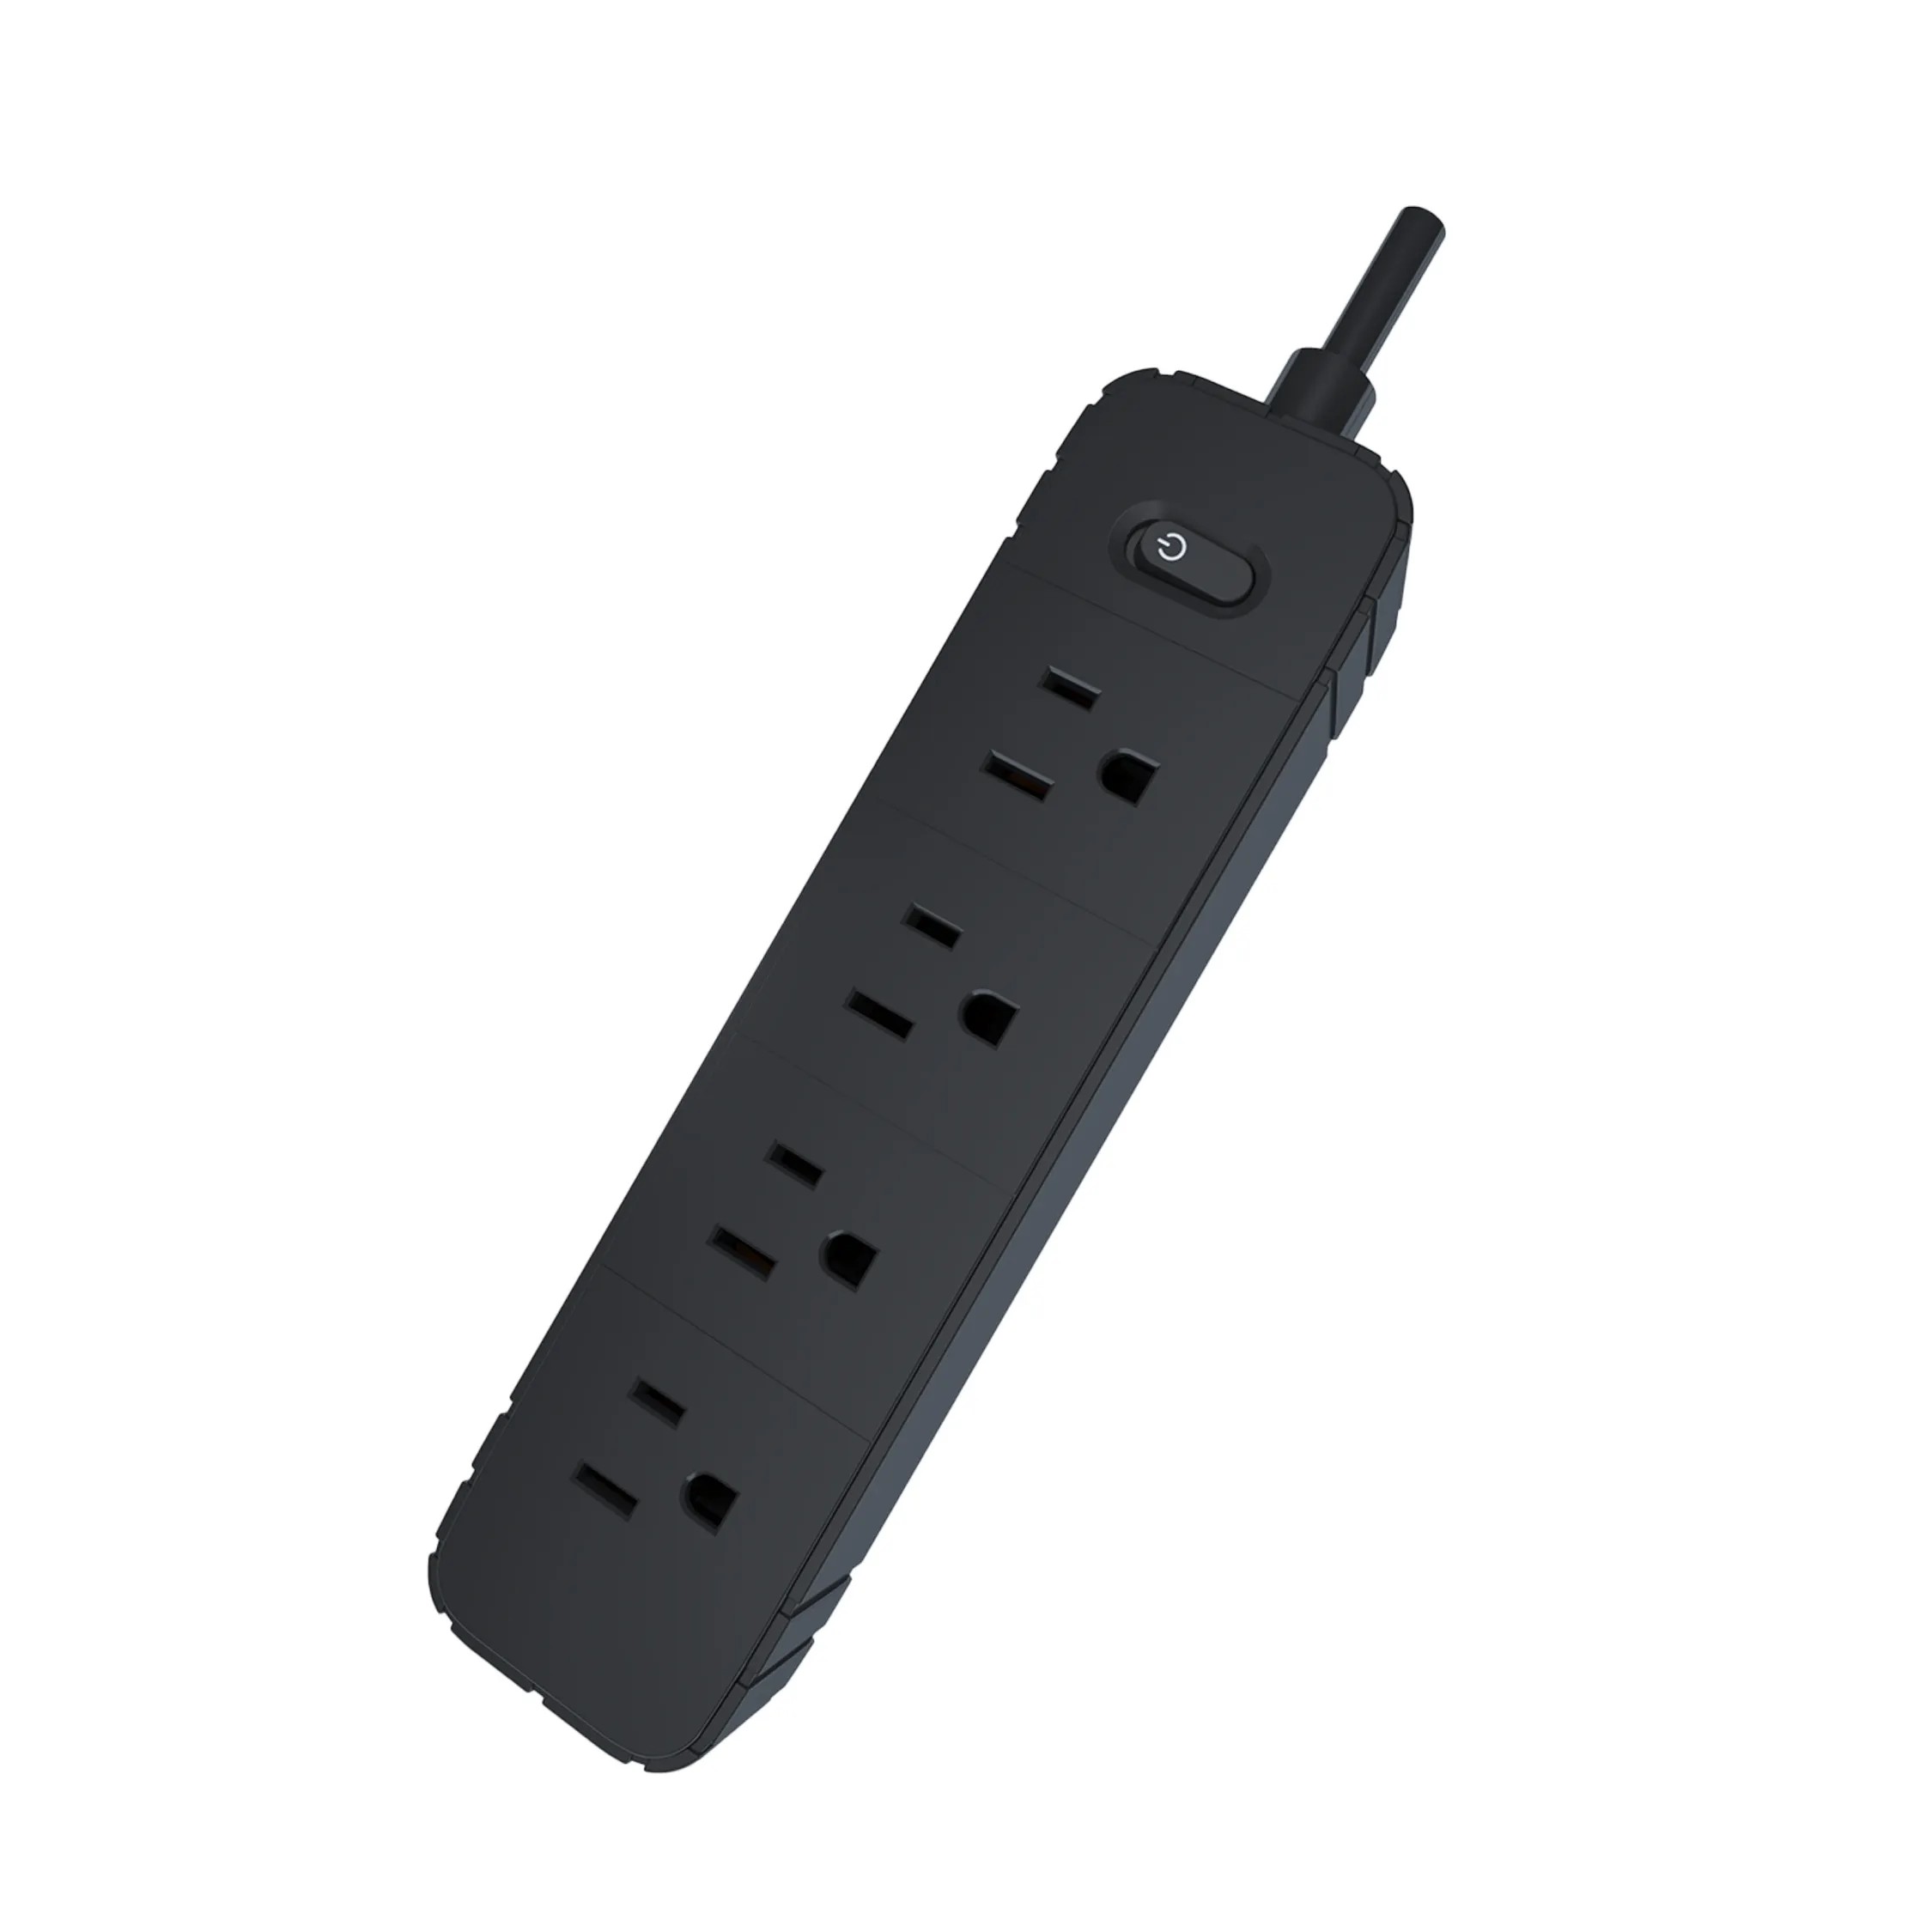 4 voies pour multiprises standard USA sans rallonge USB avec prise de rallonge électrique de 1.5m 2m 3m 4m 5m longueur de câble